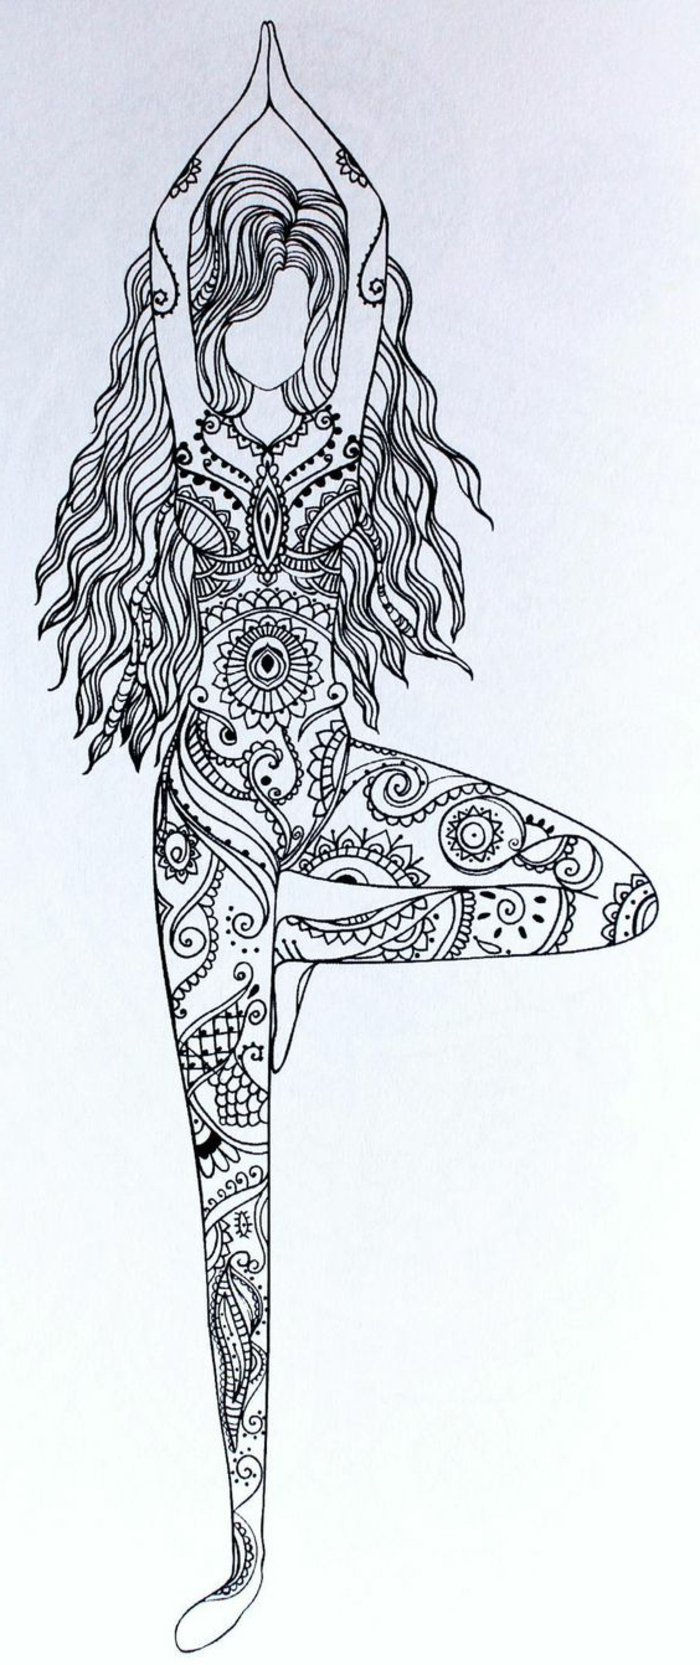 um desenho de mandala de uma menina praticando ioga, menina com cabelo longo ondulado, mini mandalas